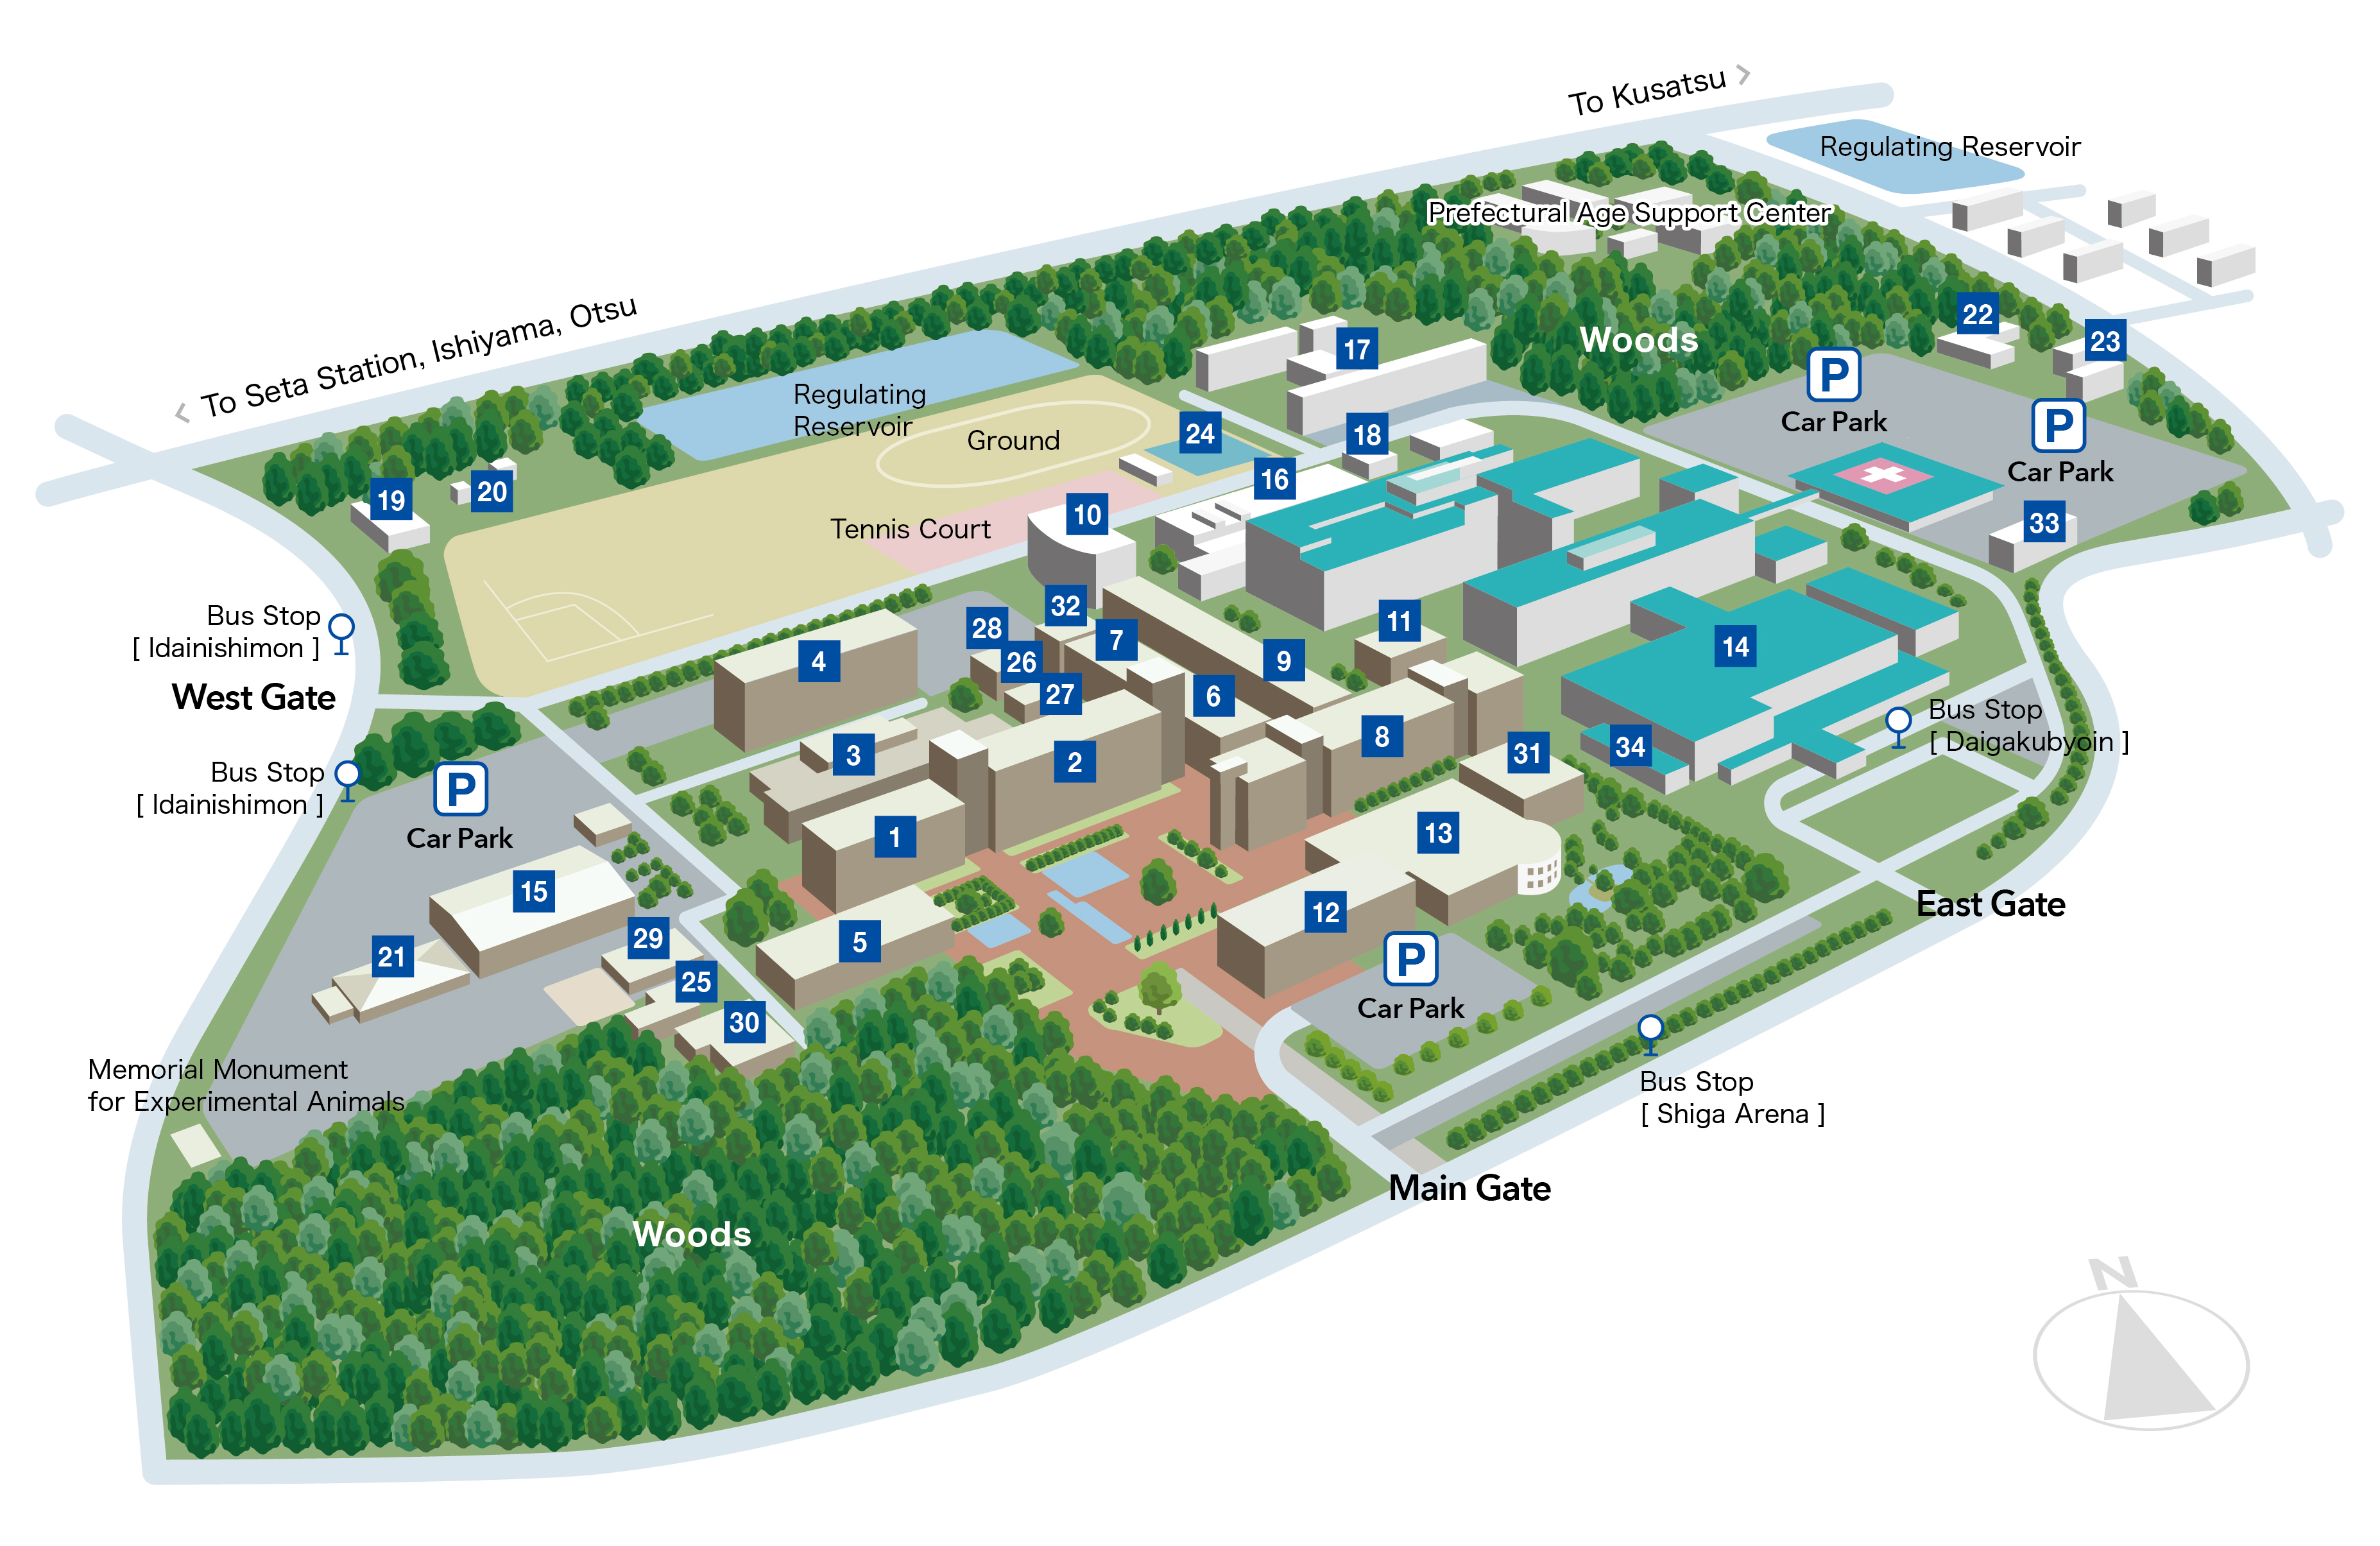 Image: Campus Map